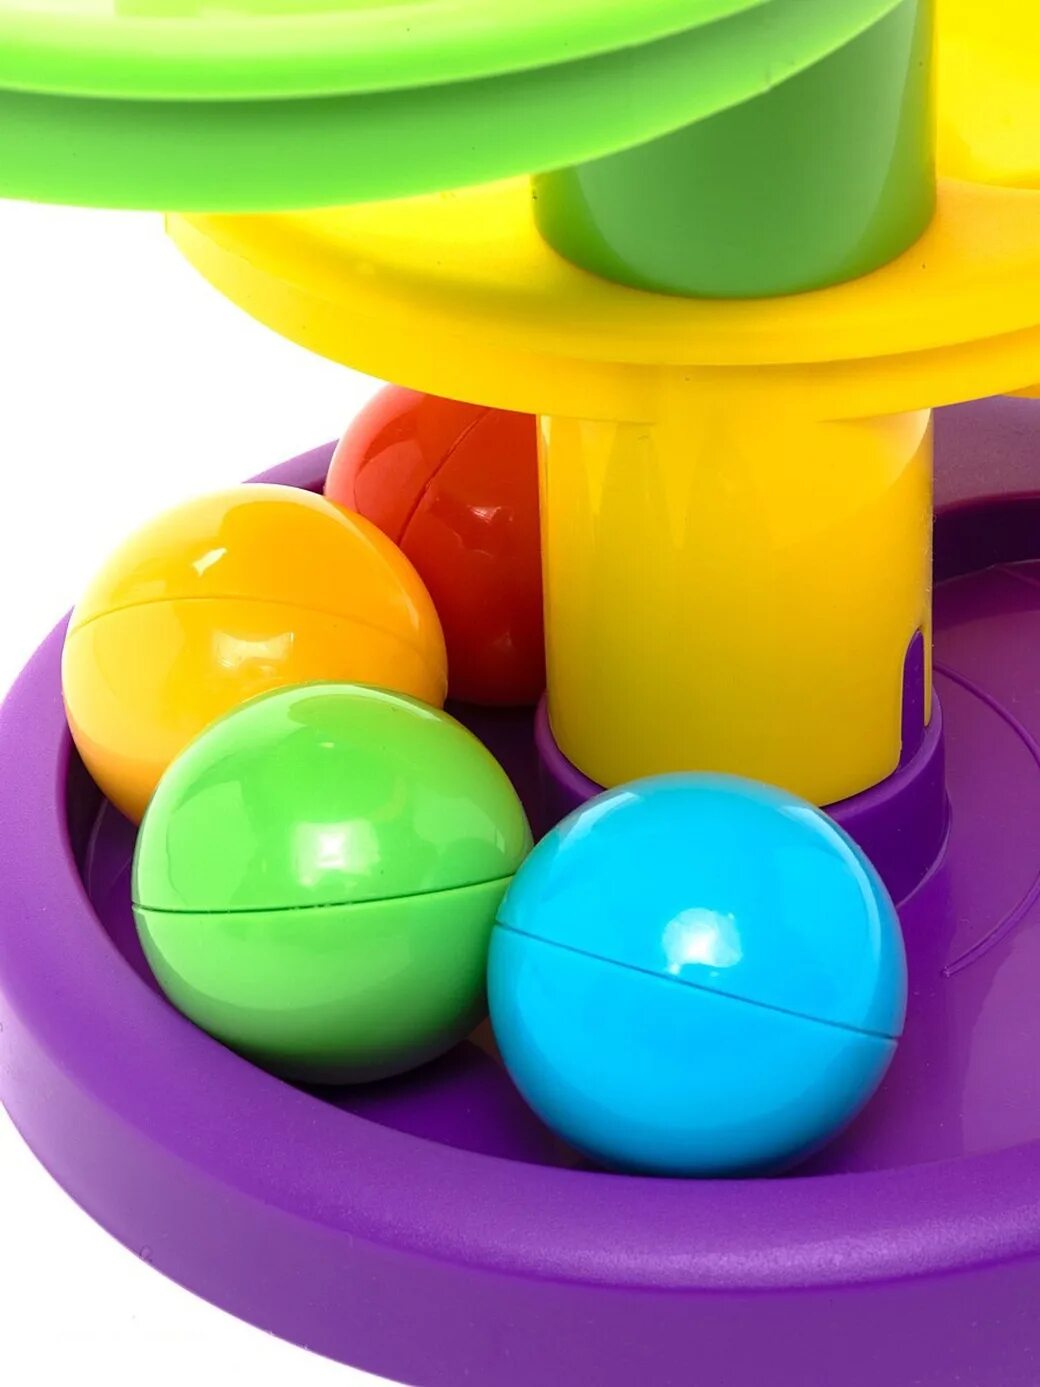 Little Tikes с шариками. Горка little Tikes спираль. Горка-шарики. Горка с шариками для детей игрушки.